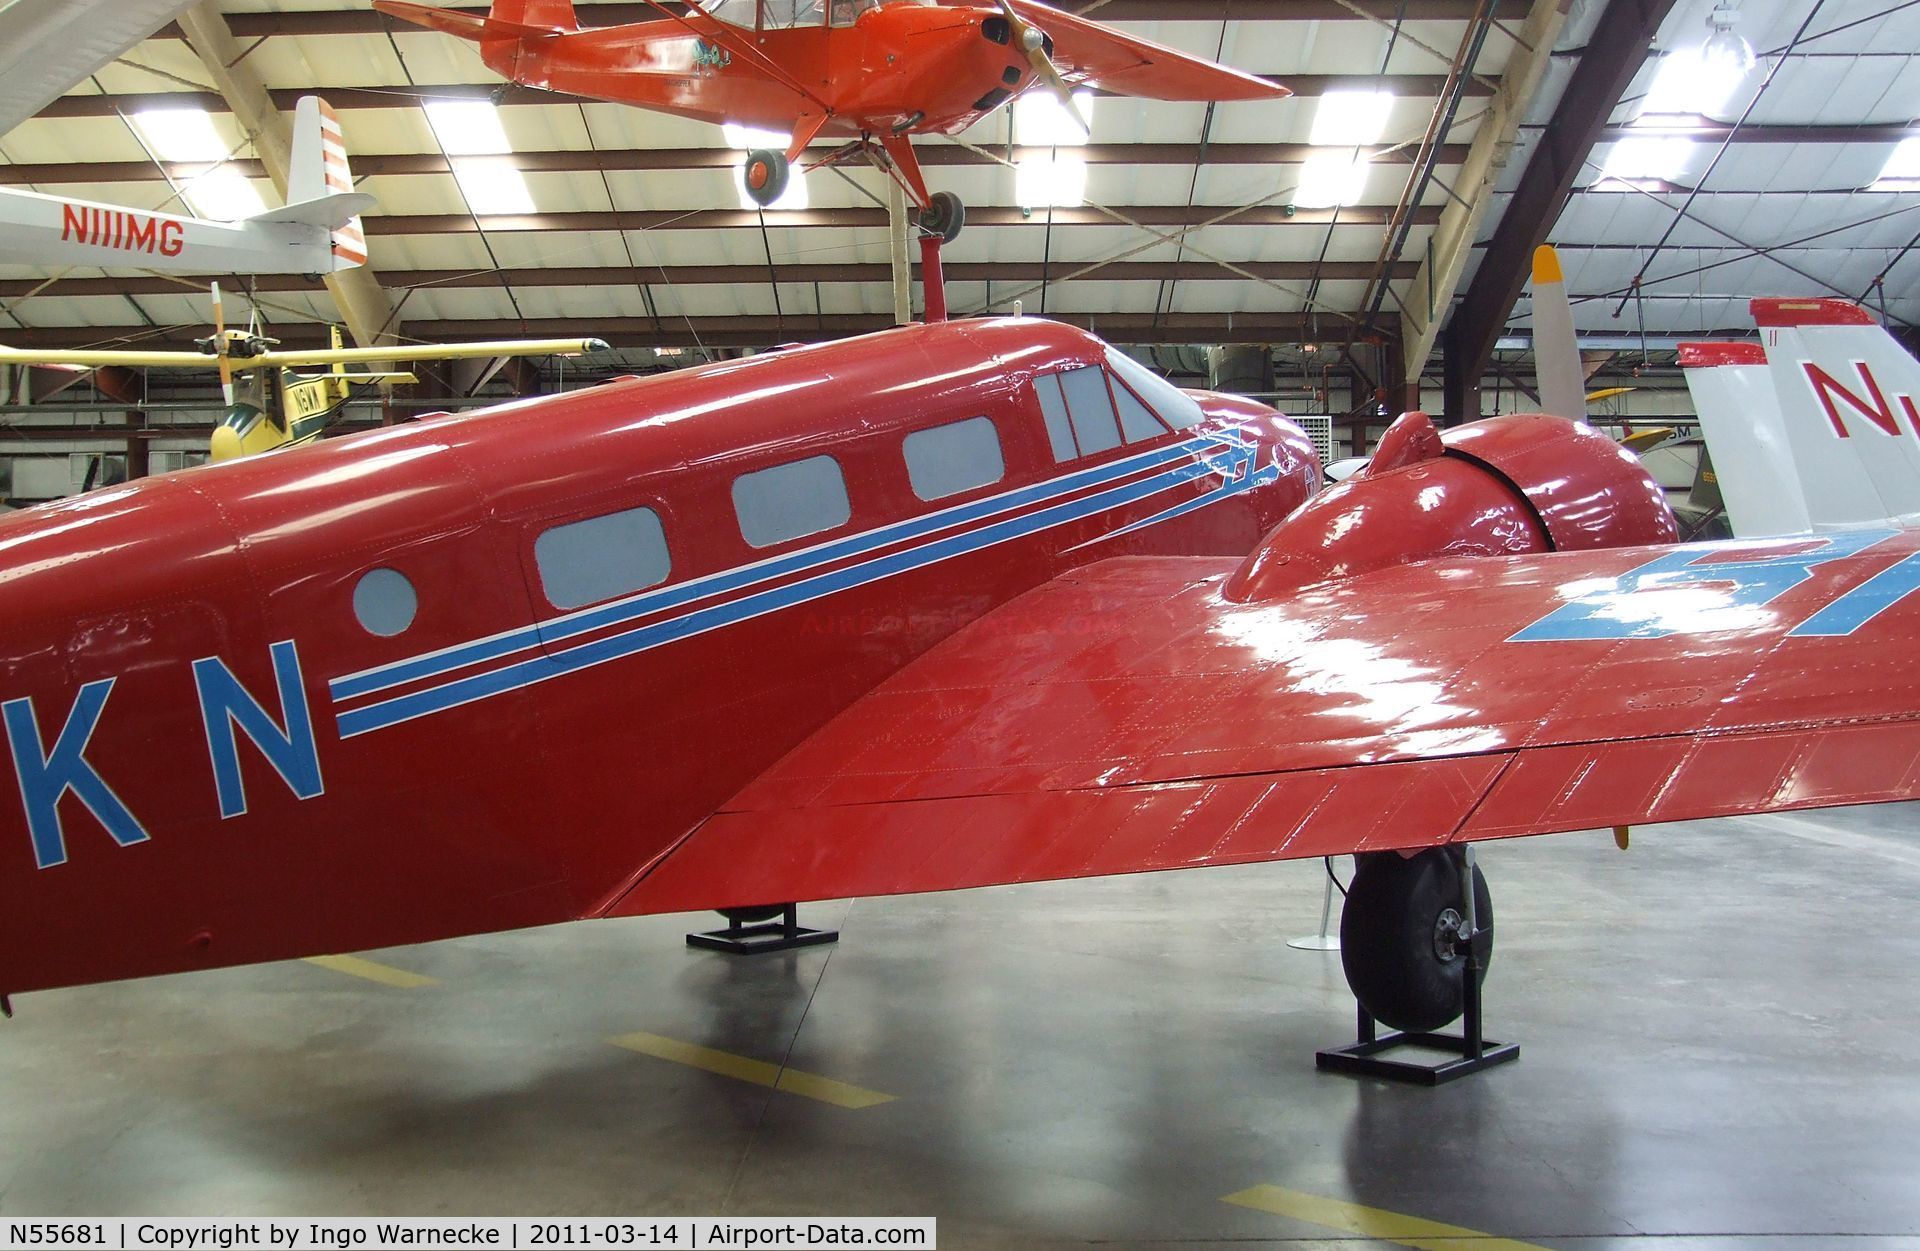 N55681, Beech 18D C/N 177, Beechcraft S18D Twin Beech at the Pima Air & Space Museum, Tucson AZ